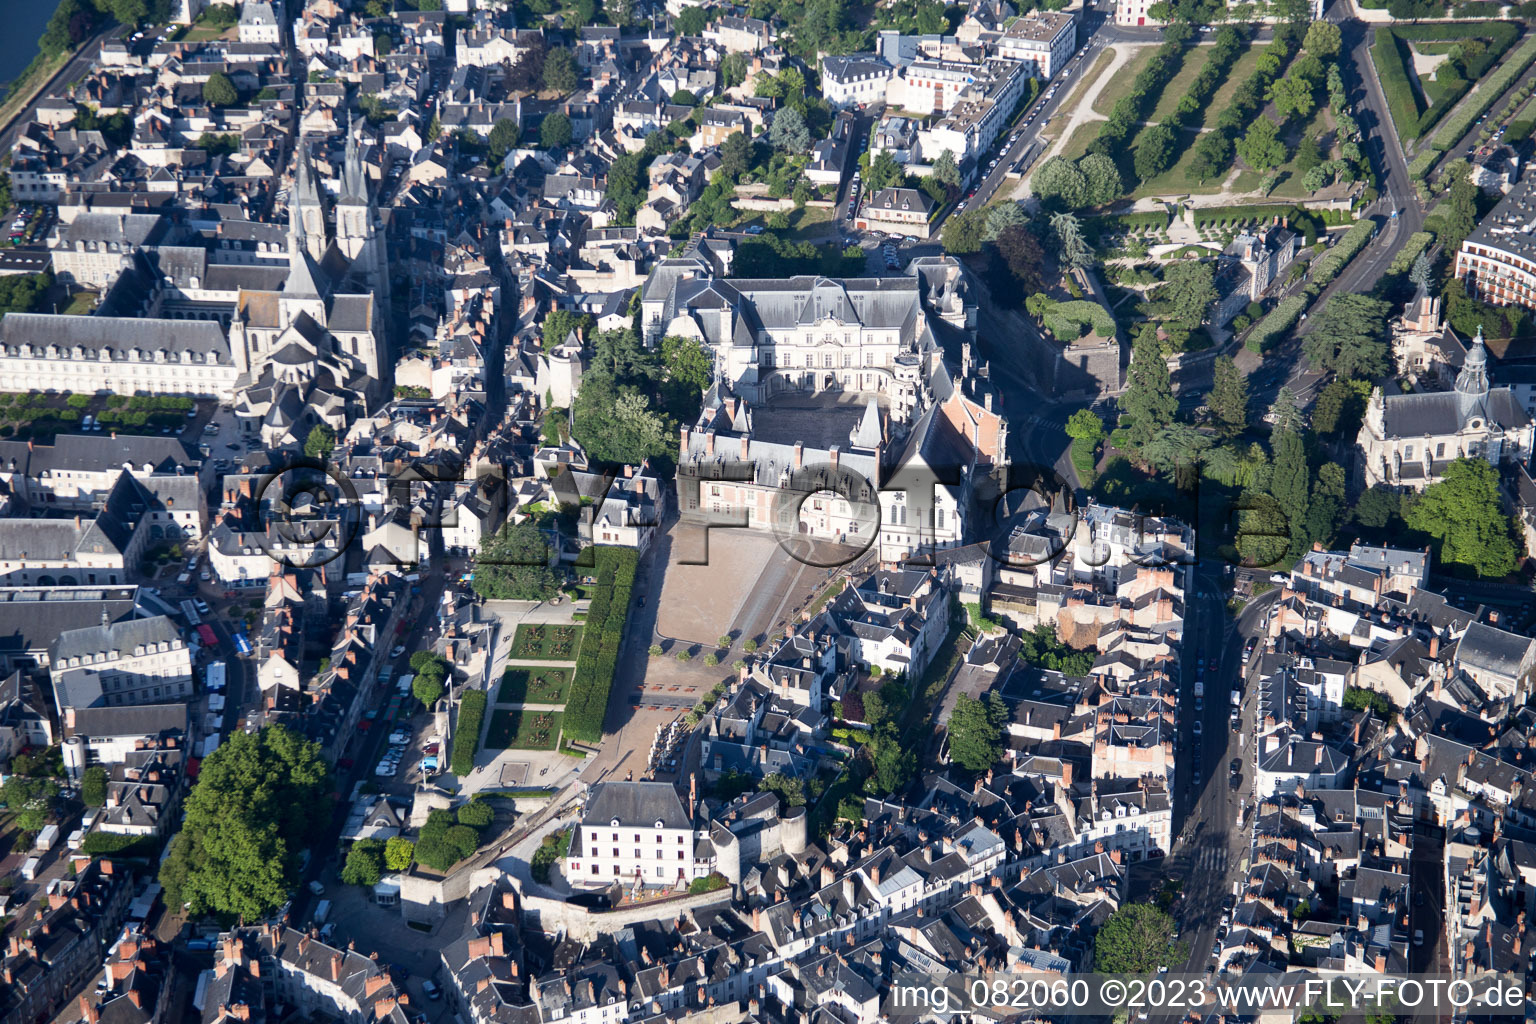 Blois im Bundesland Loir-et-Cher, Frankreich von der Drohne aus gesehen